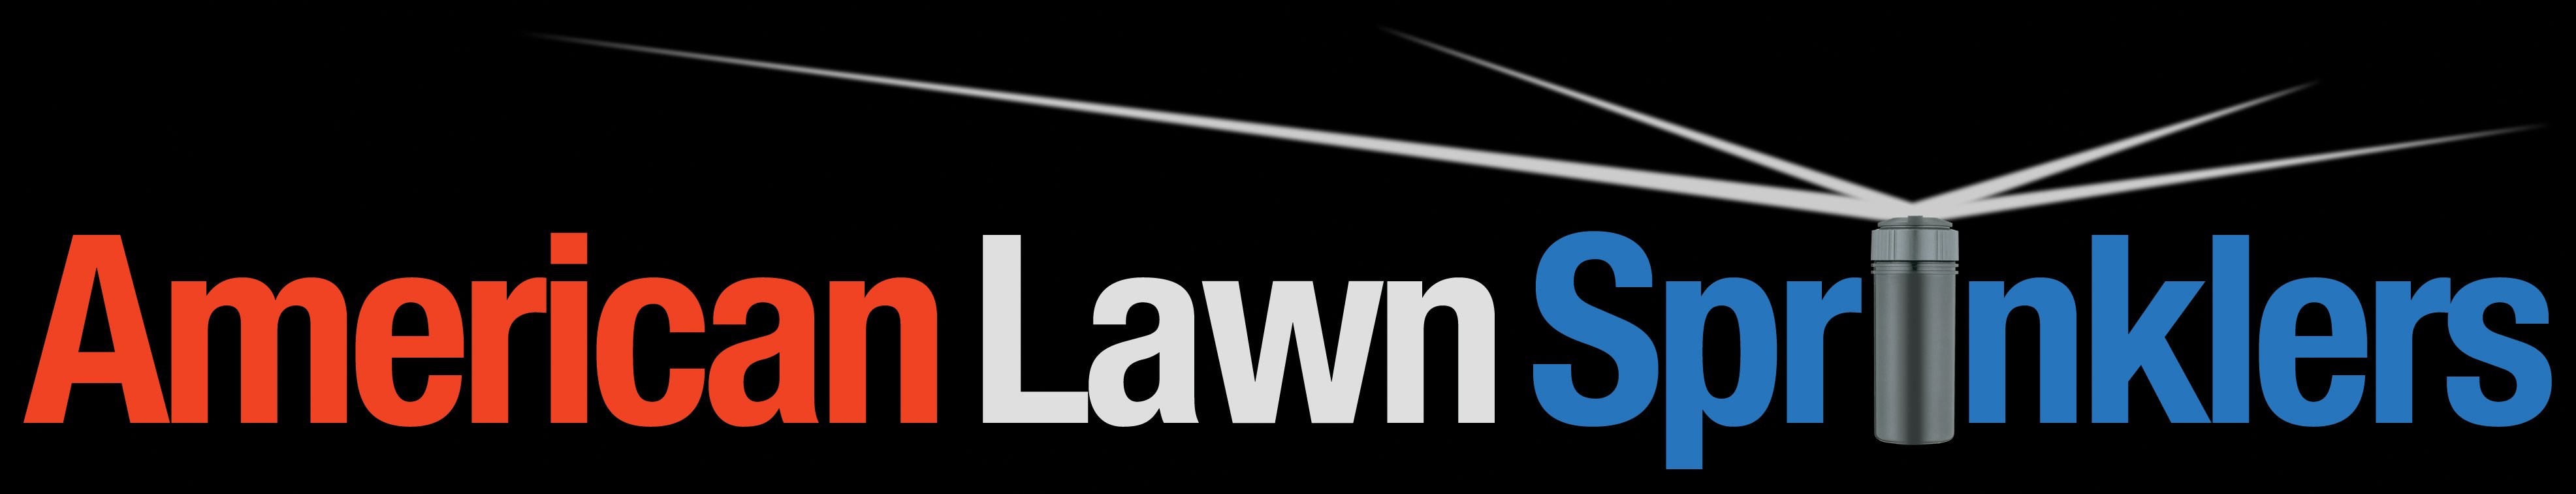 American Lawn Sprinklers, Inc. Logo